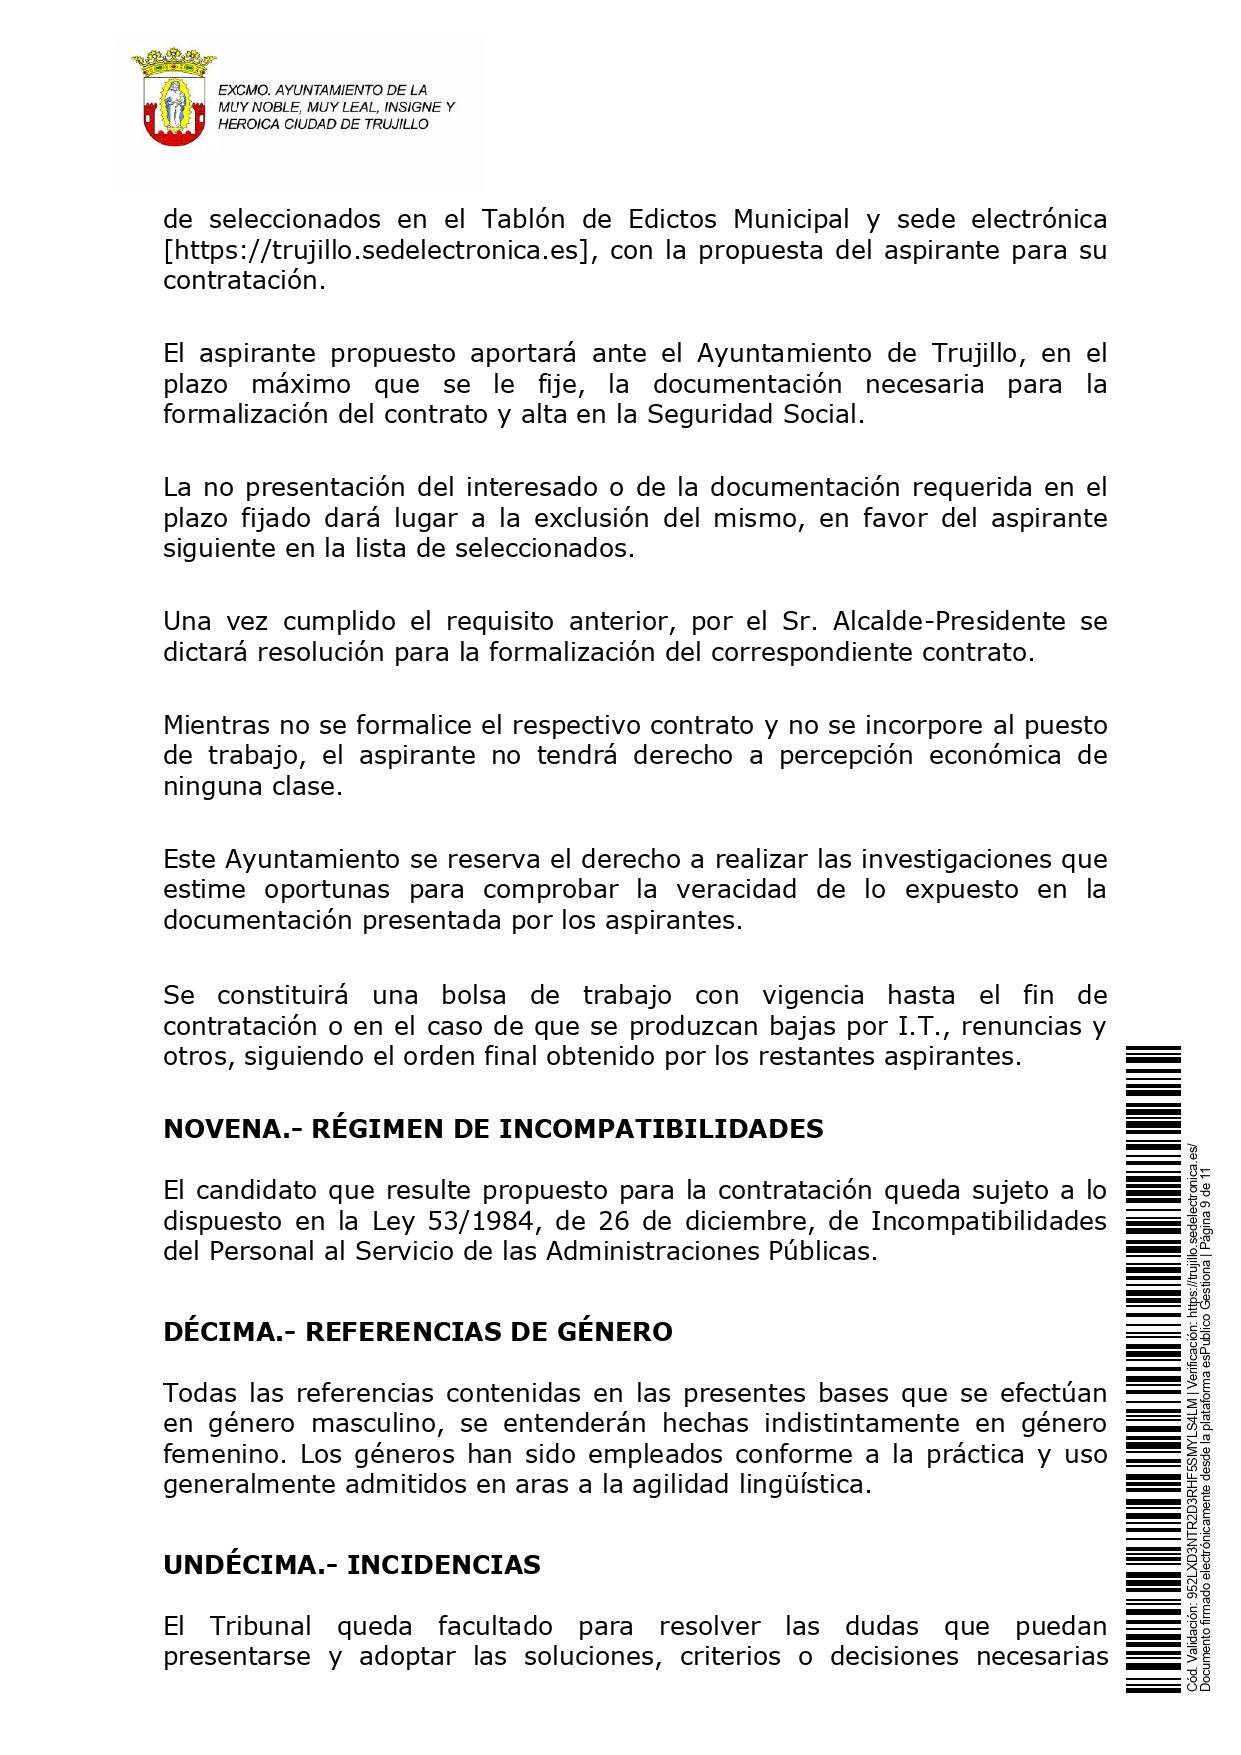 Gestor cultural (febrero 2022) - Trujillo (Cáceres) 9